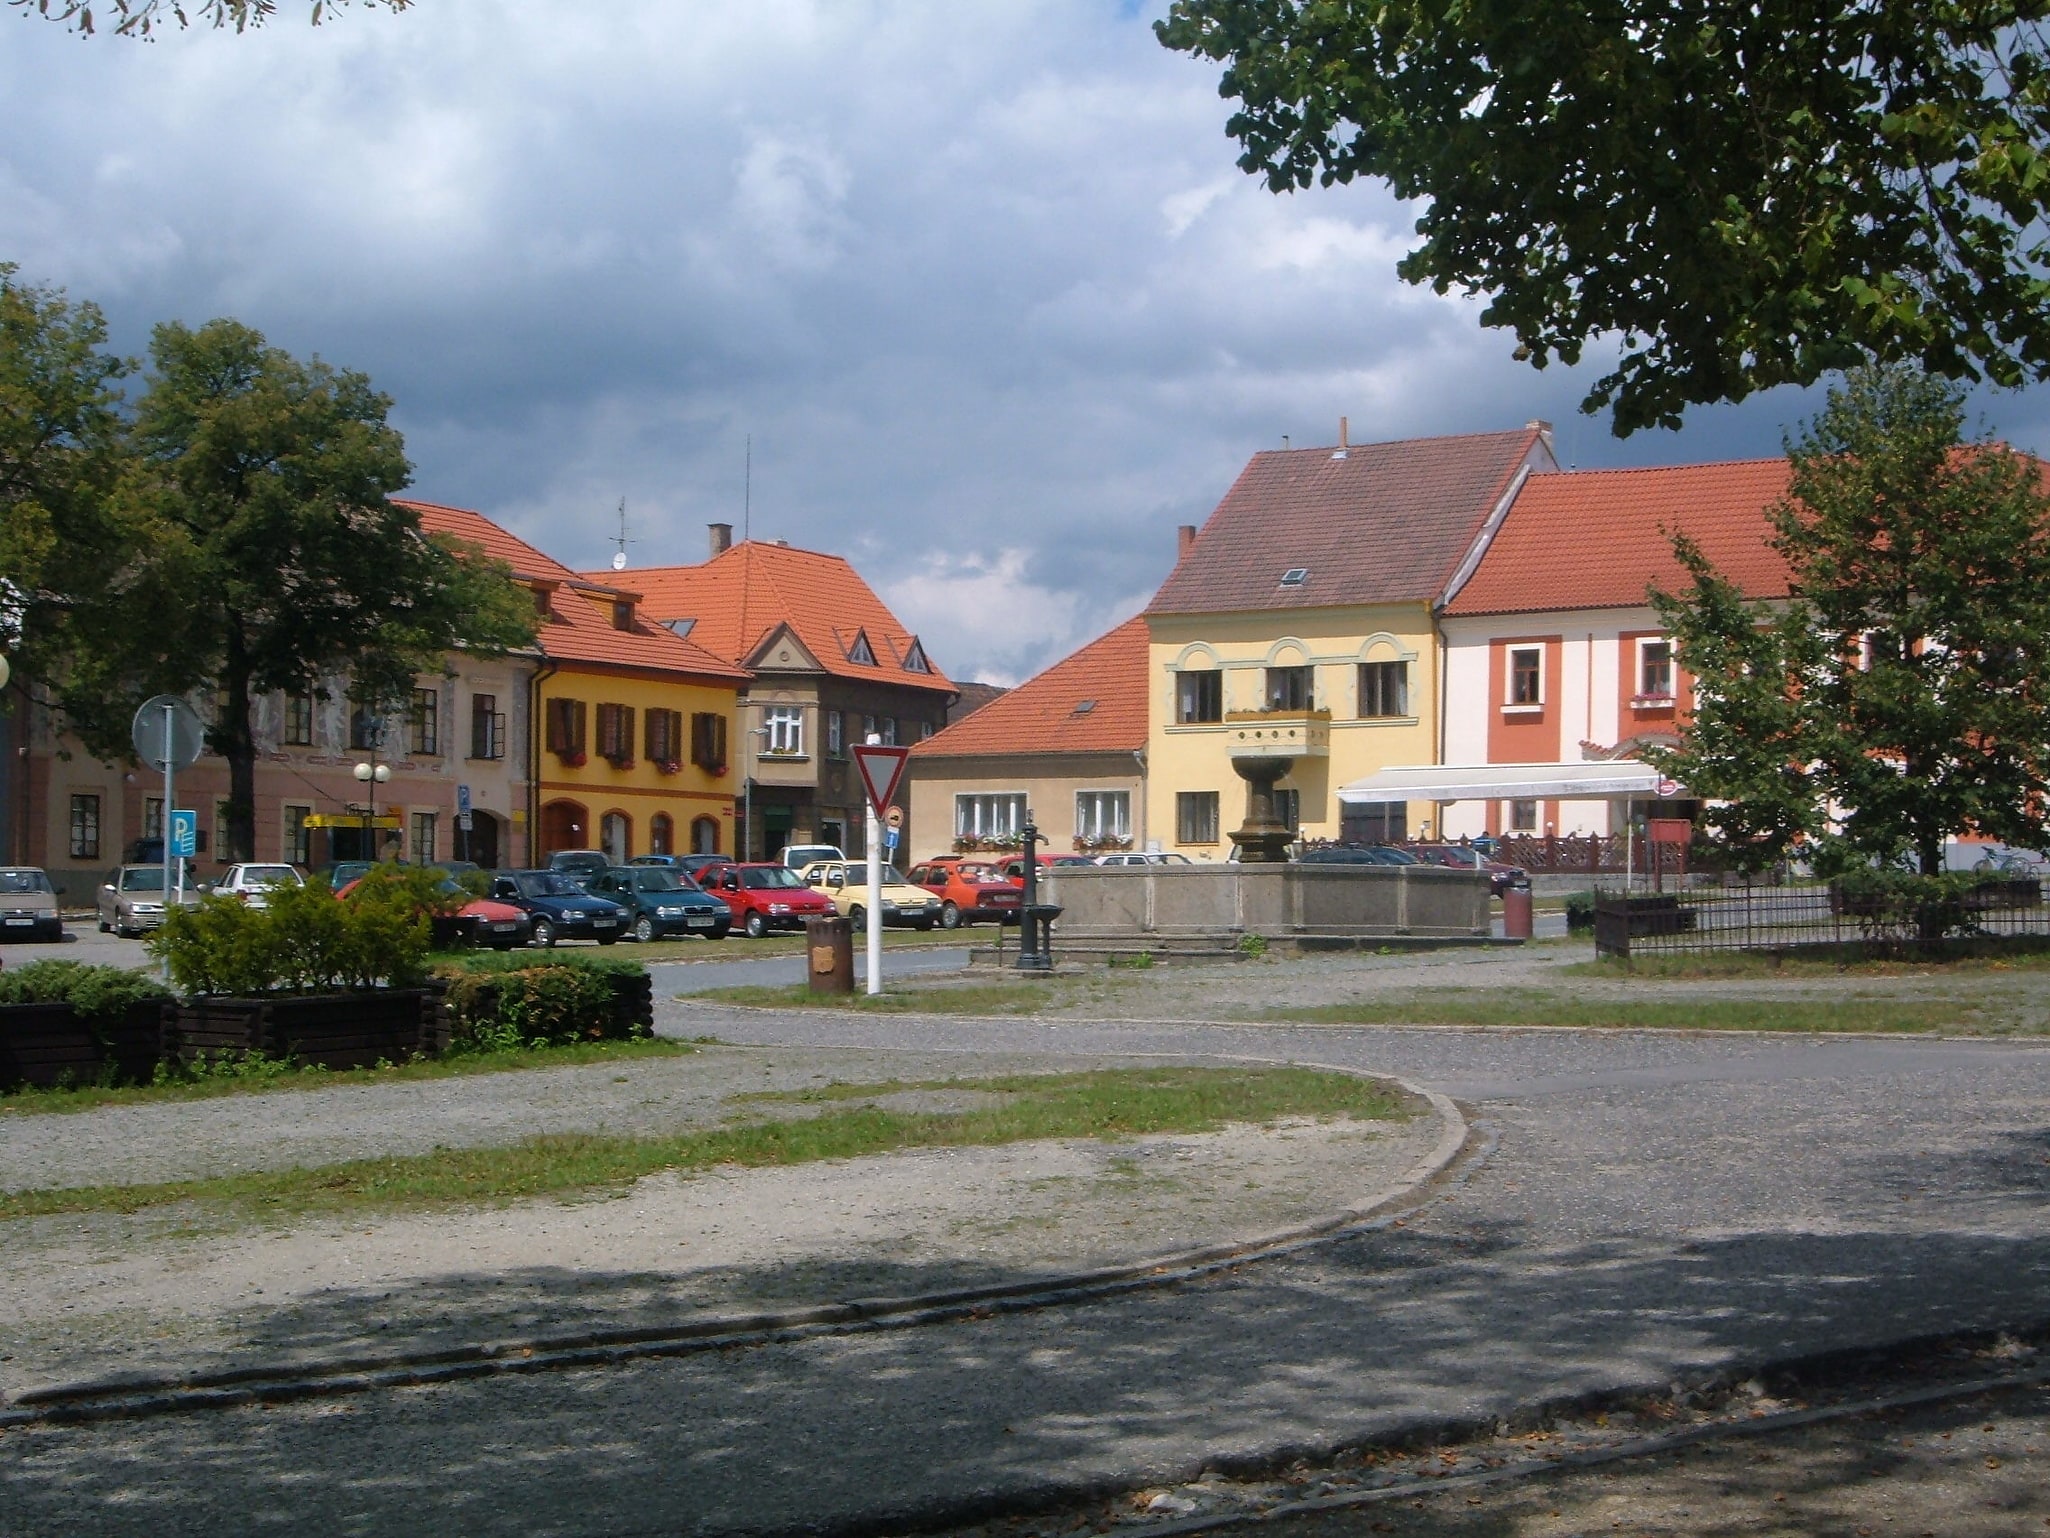 Bechyně, Czech Republic